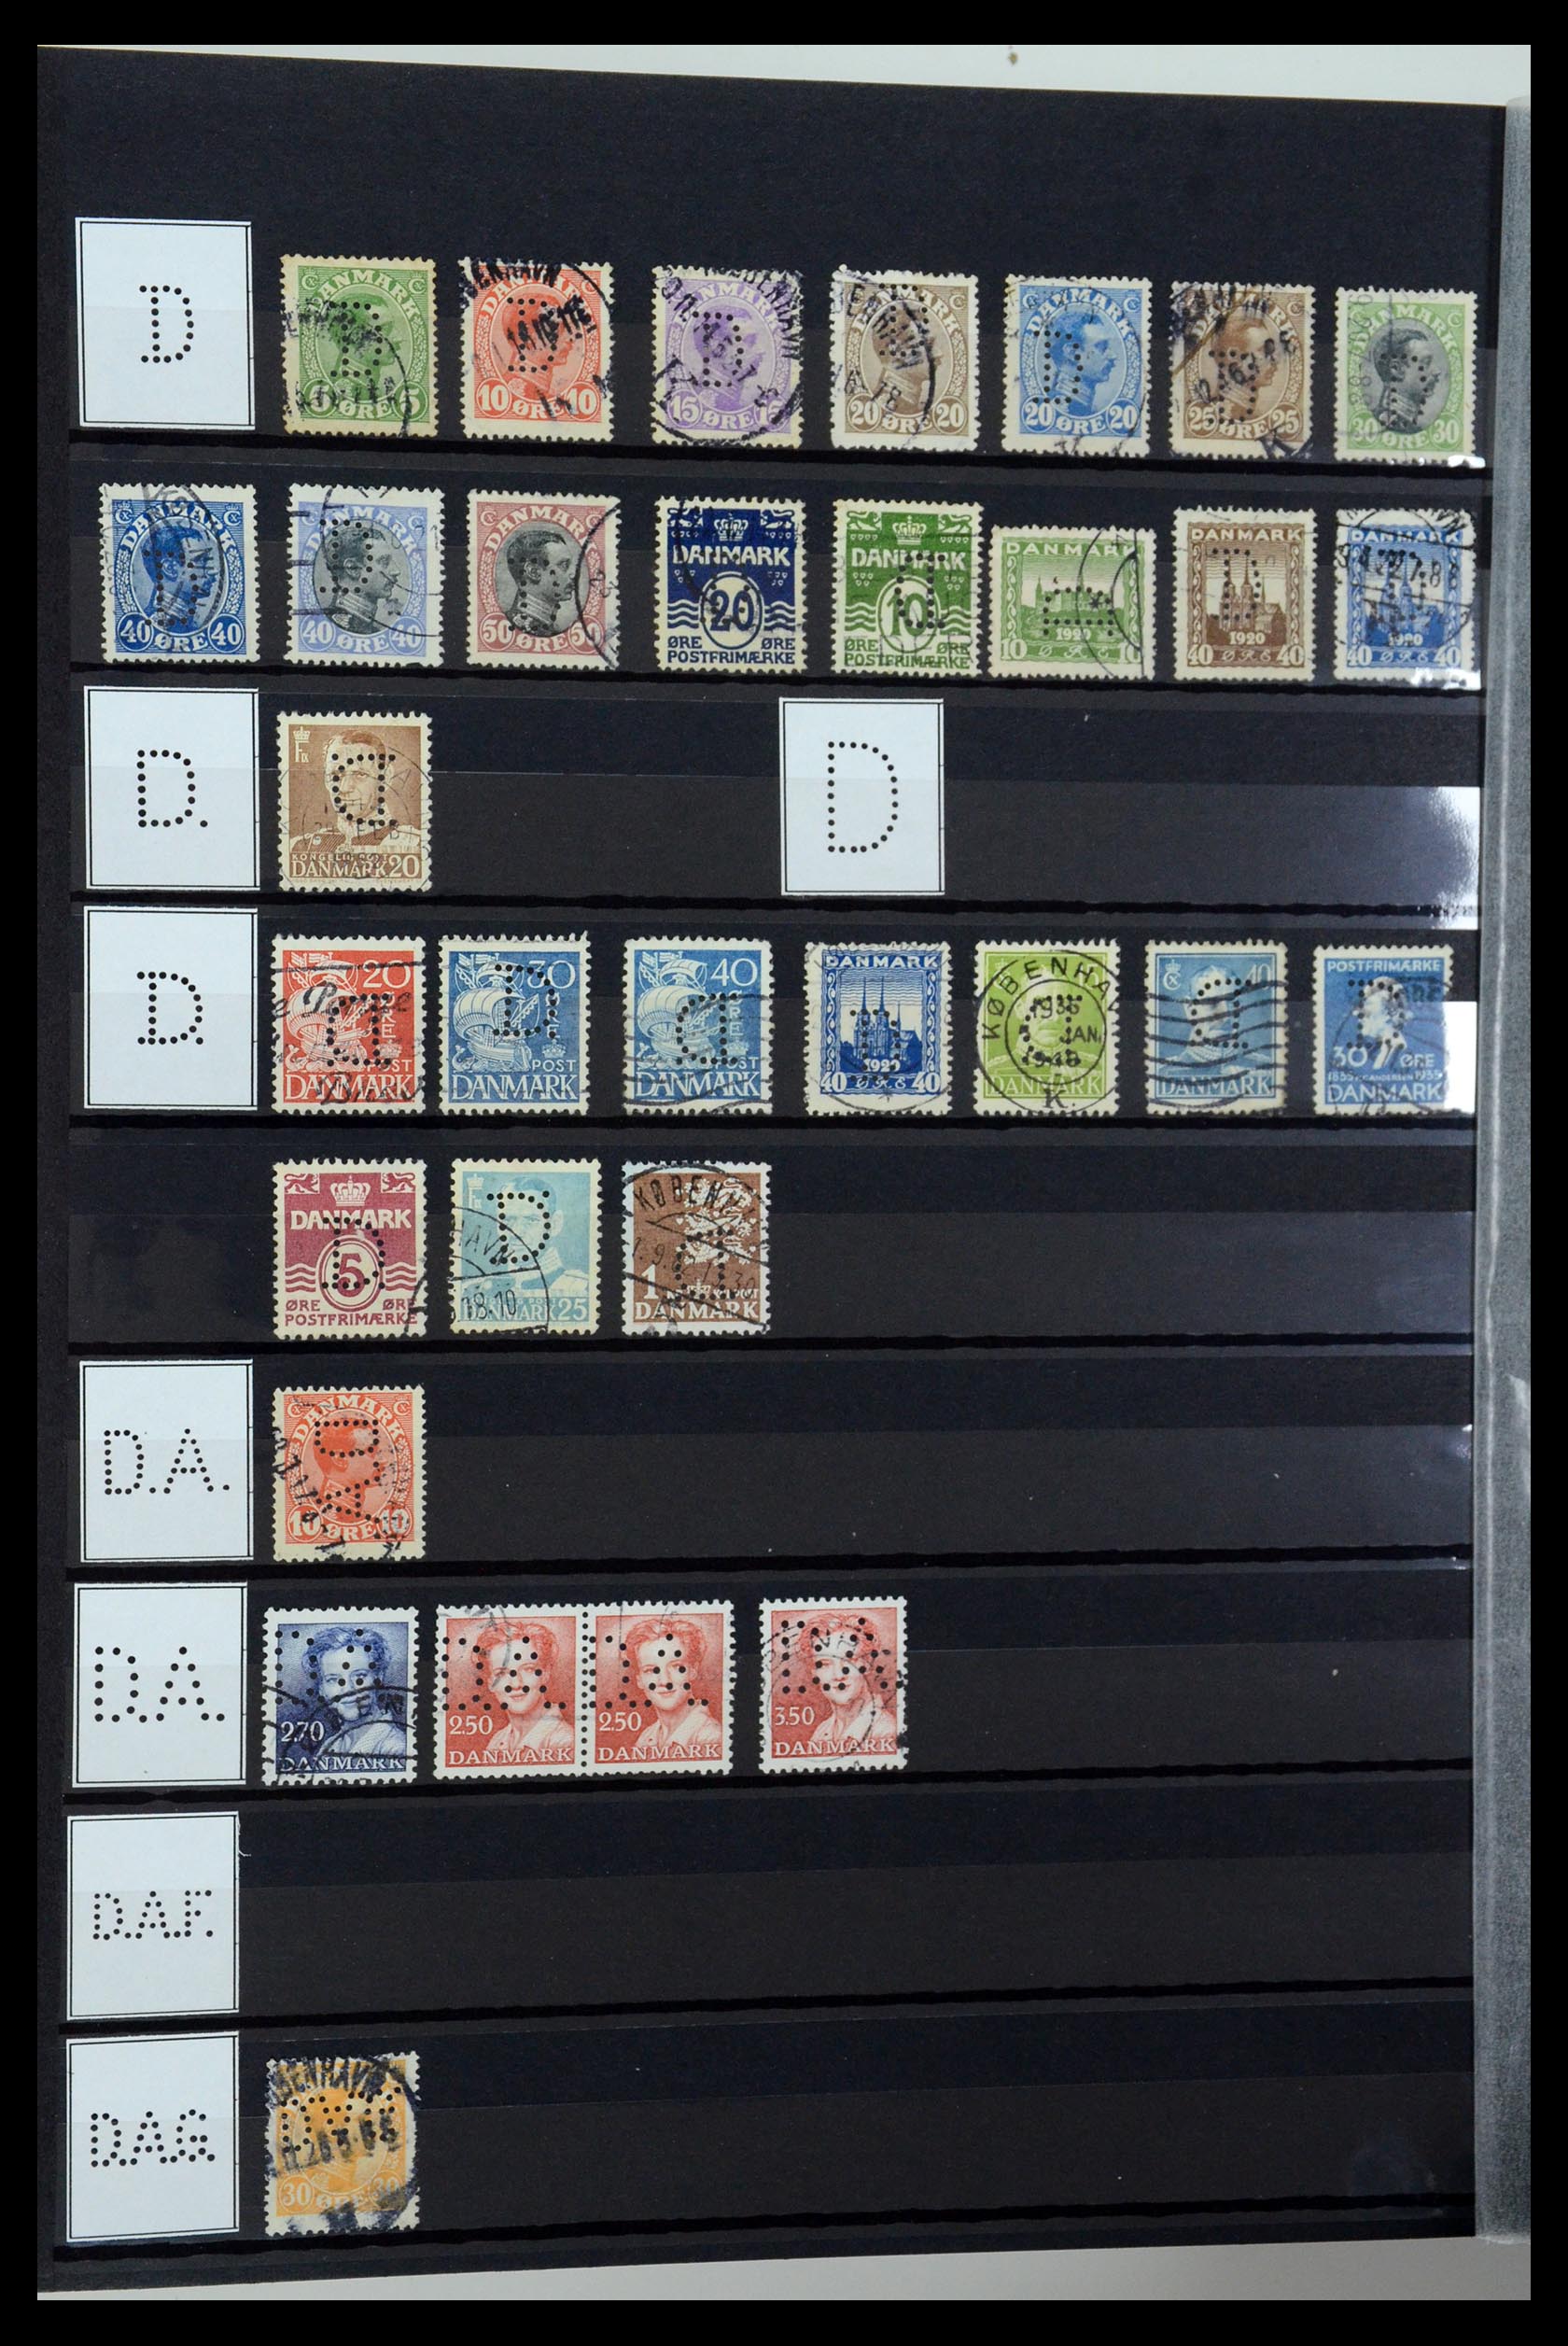 36396 032 - Postzegelverzameling 36396 Denemarken perfins.